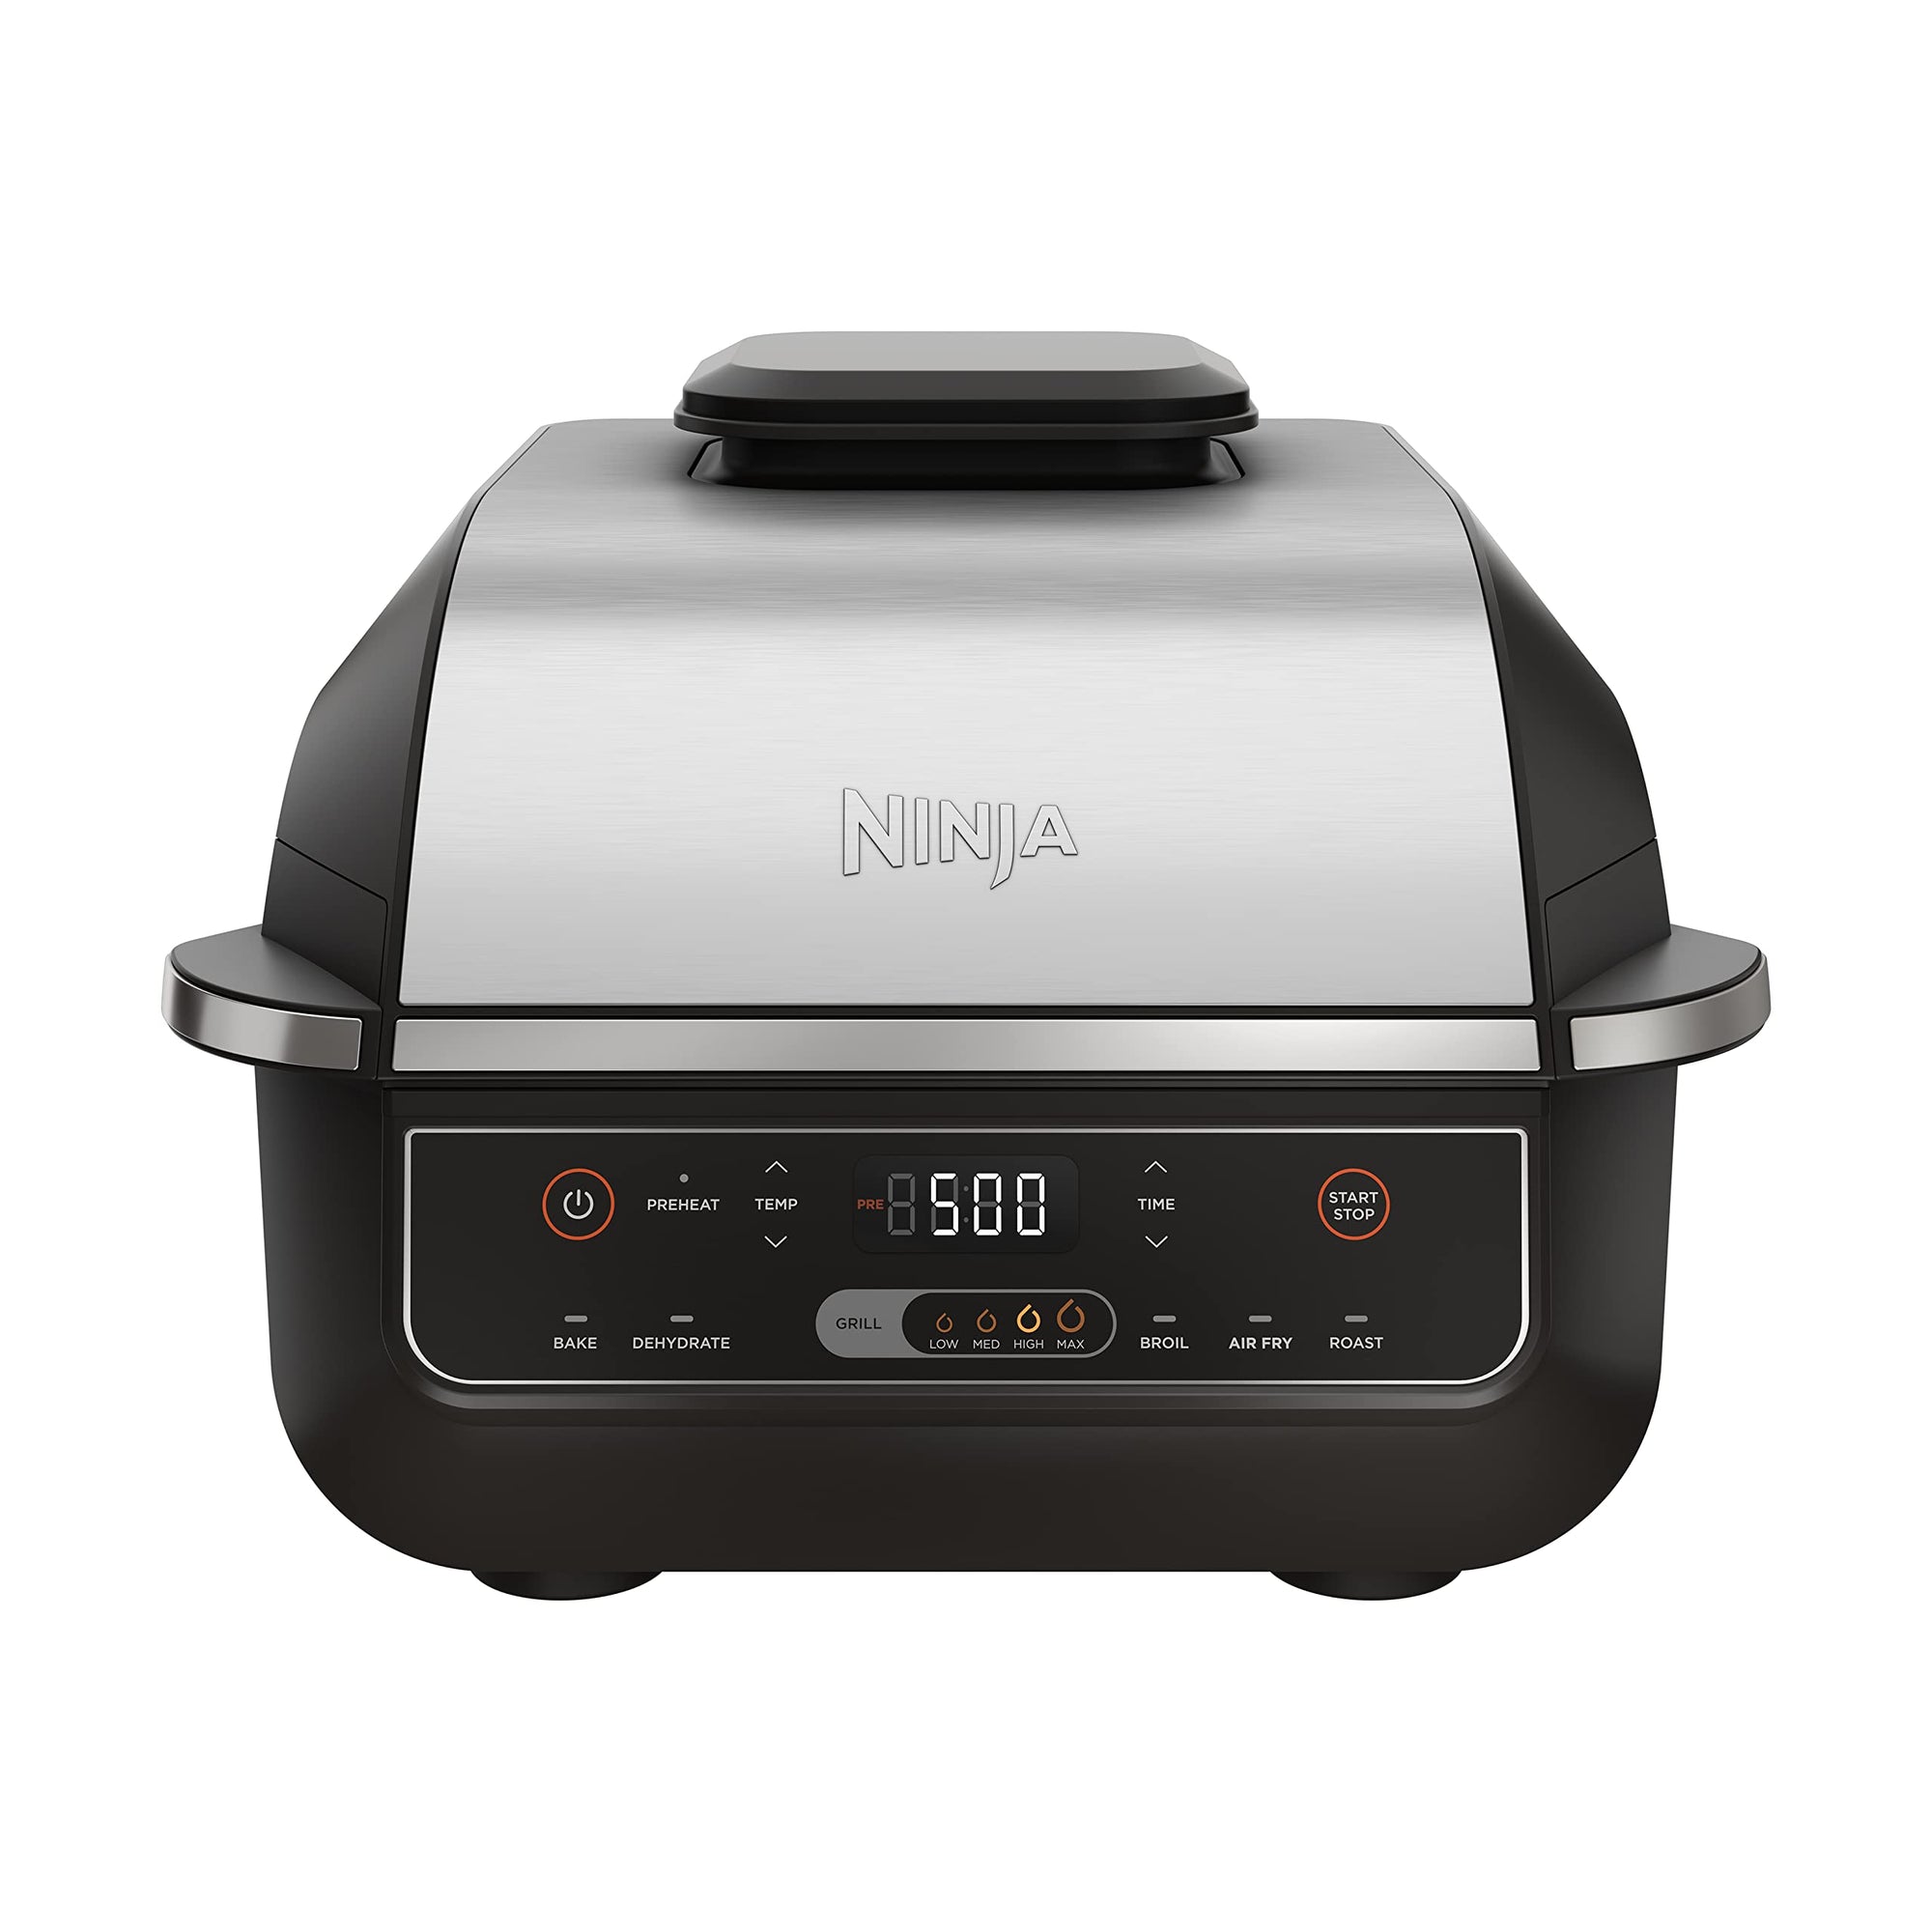 Ninja EG201 Foodi 6 合 1 室内烧烤炉，带空气炸锅、烘烤、烘烤、烧烤和脱水功能，第二代，可用洗碗机清洗，黑色/银色